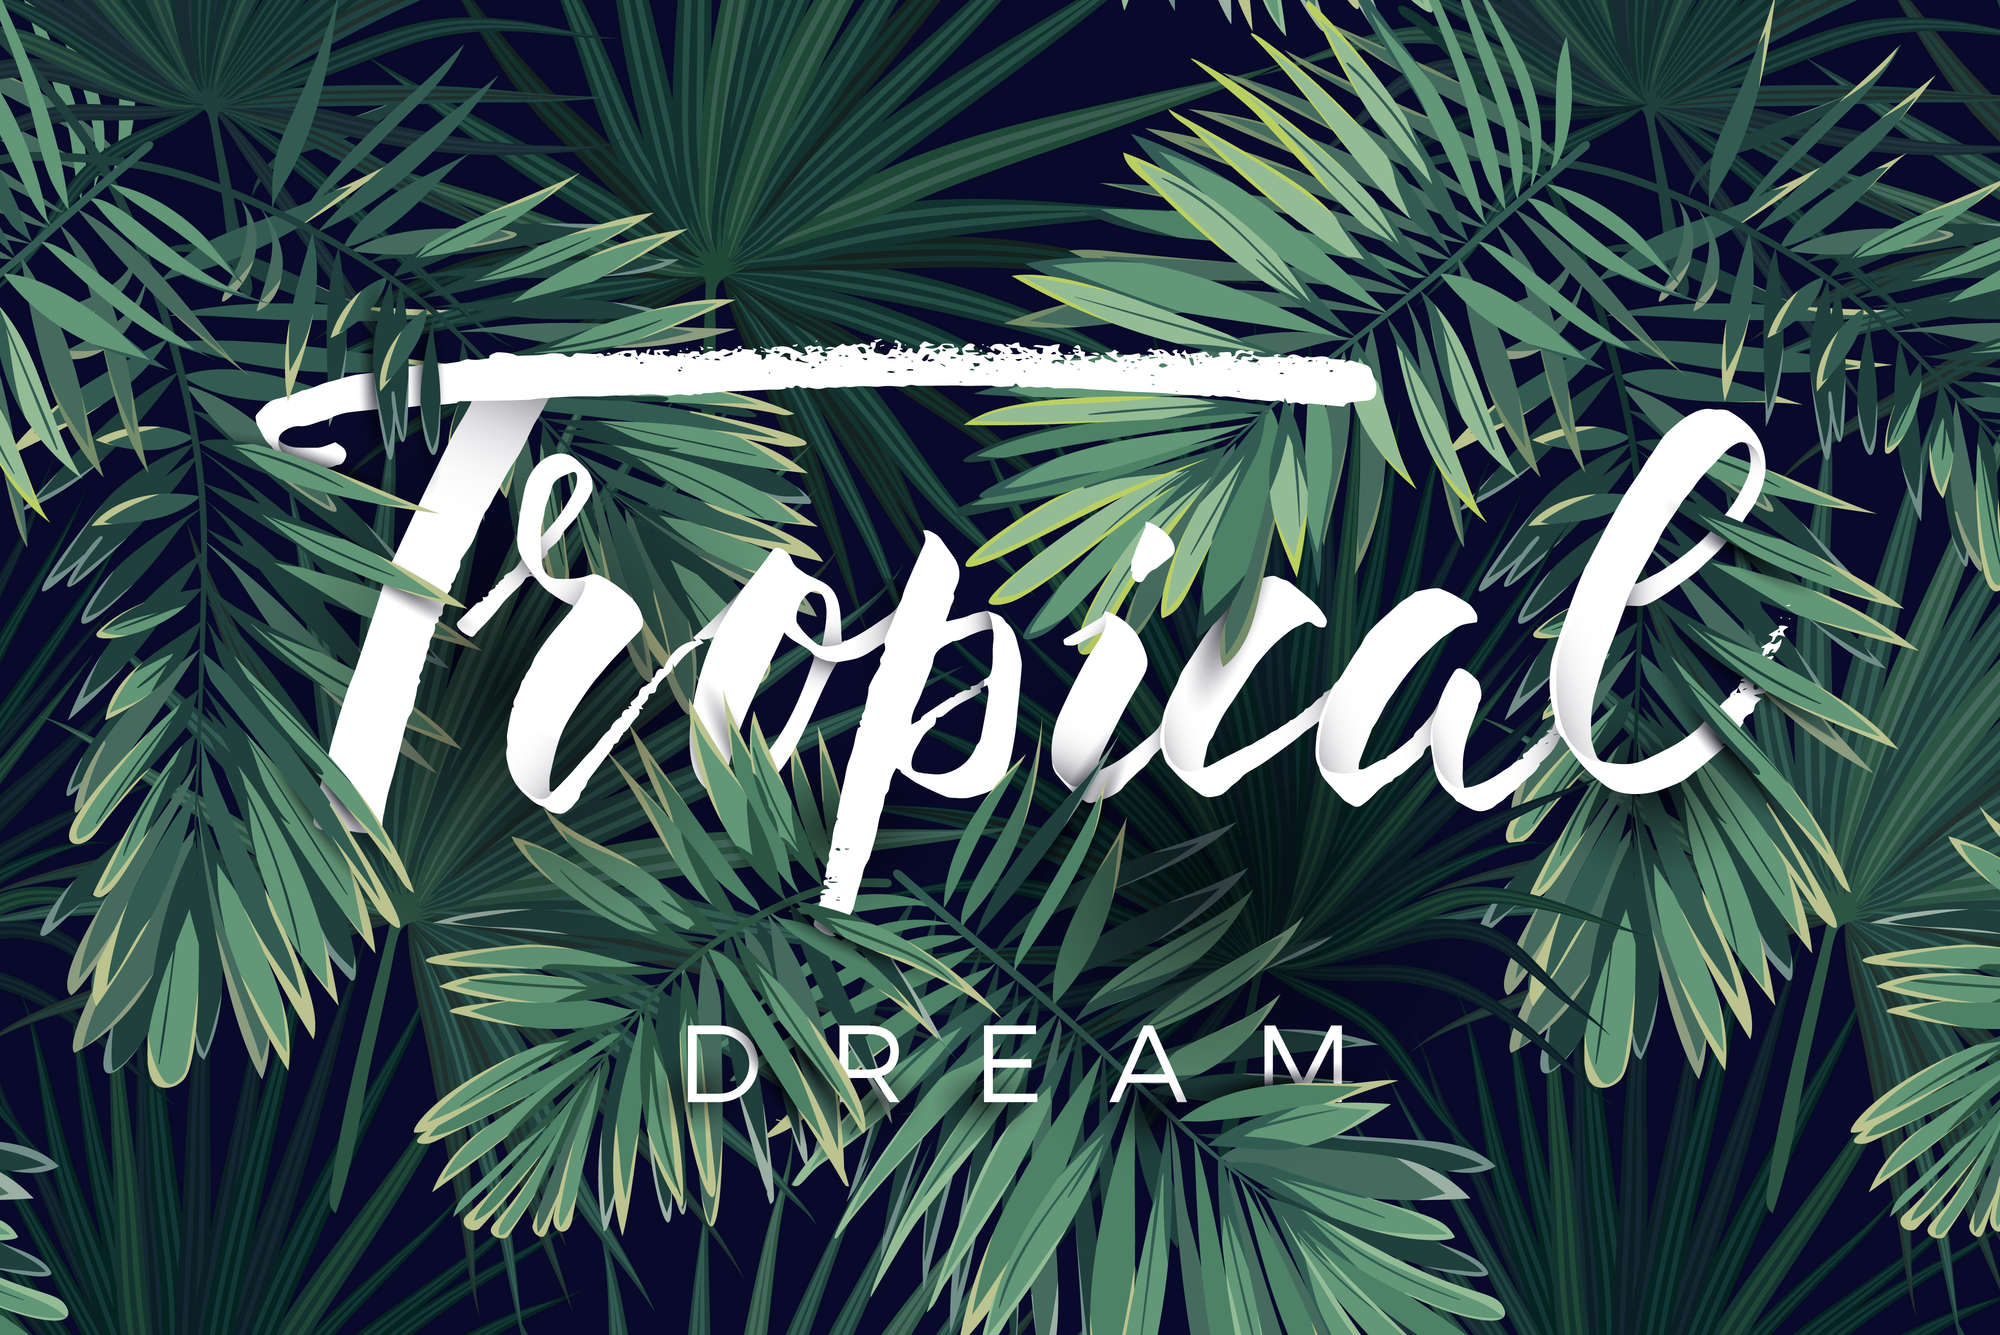             Grafisch behangpapier "Tropical Dream" op premium gladde vliesstof
        